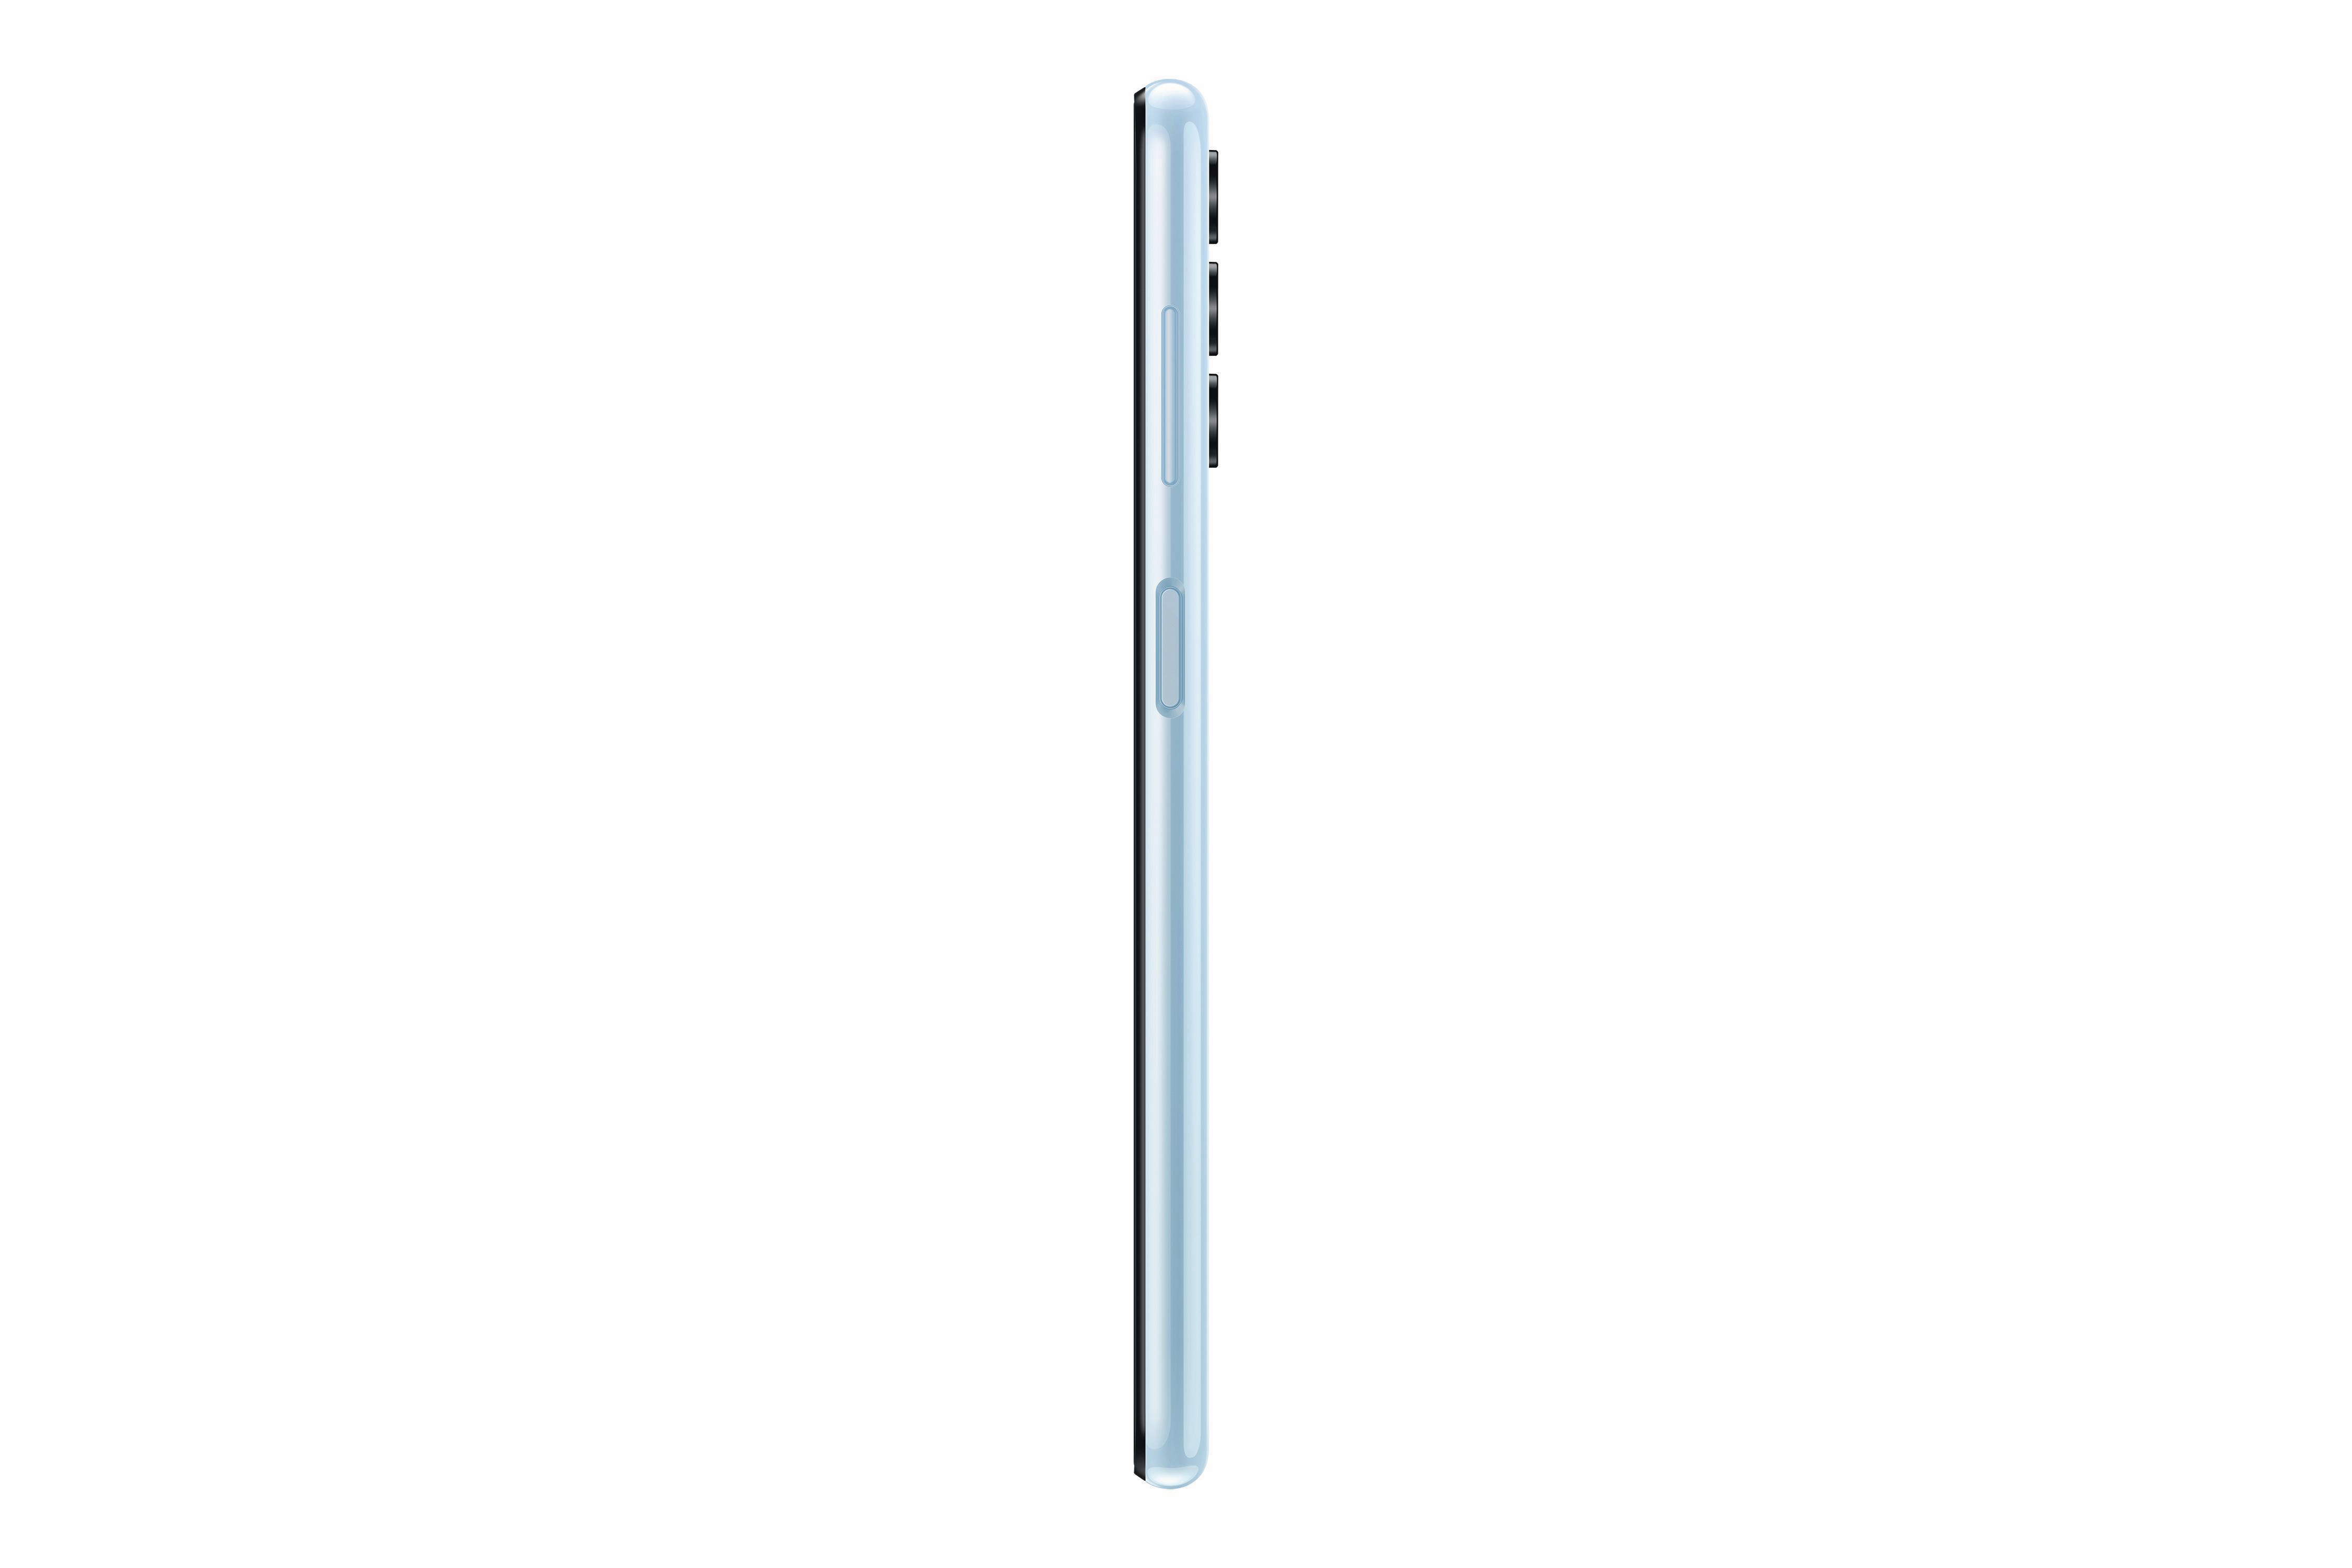 SAMSUNG Galaxy Light Blue Dual SIM A13 64 GB